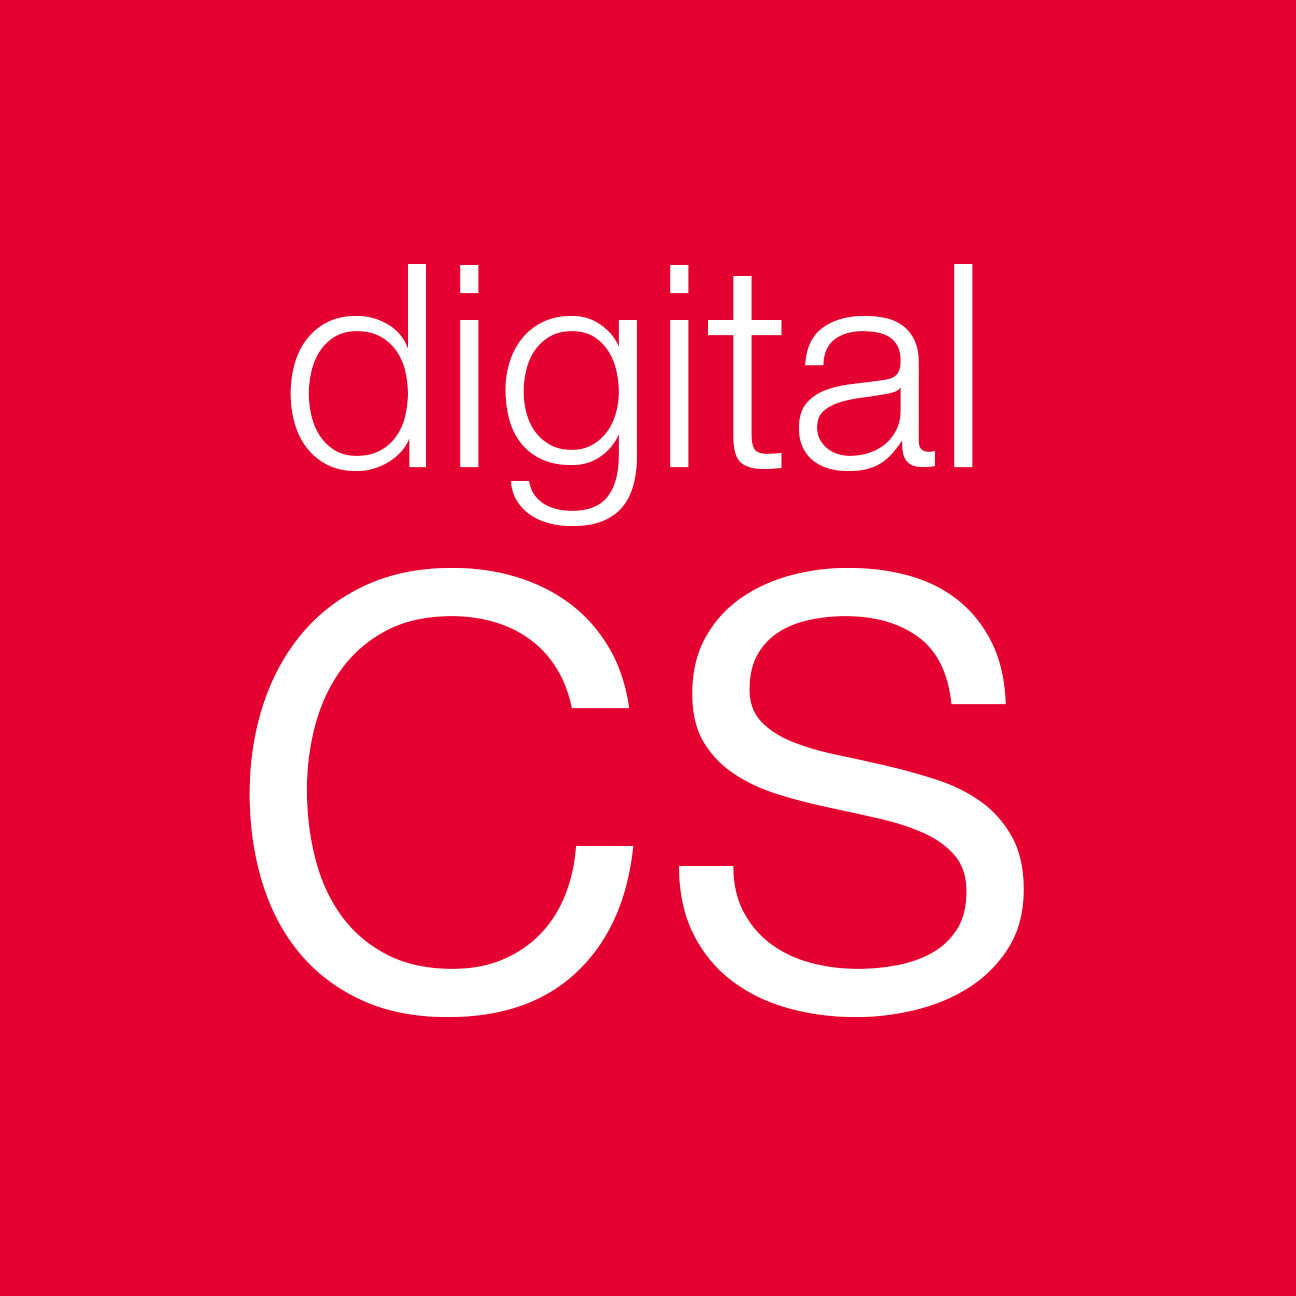 Digital CS